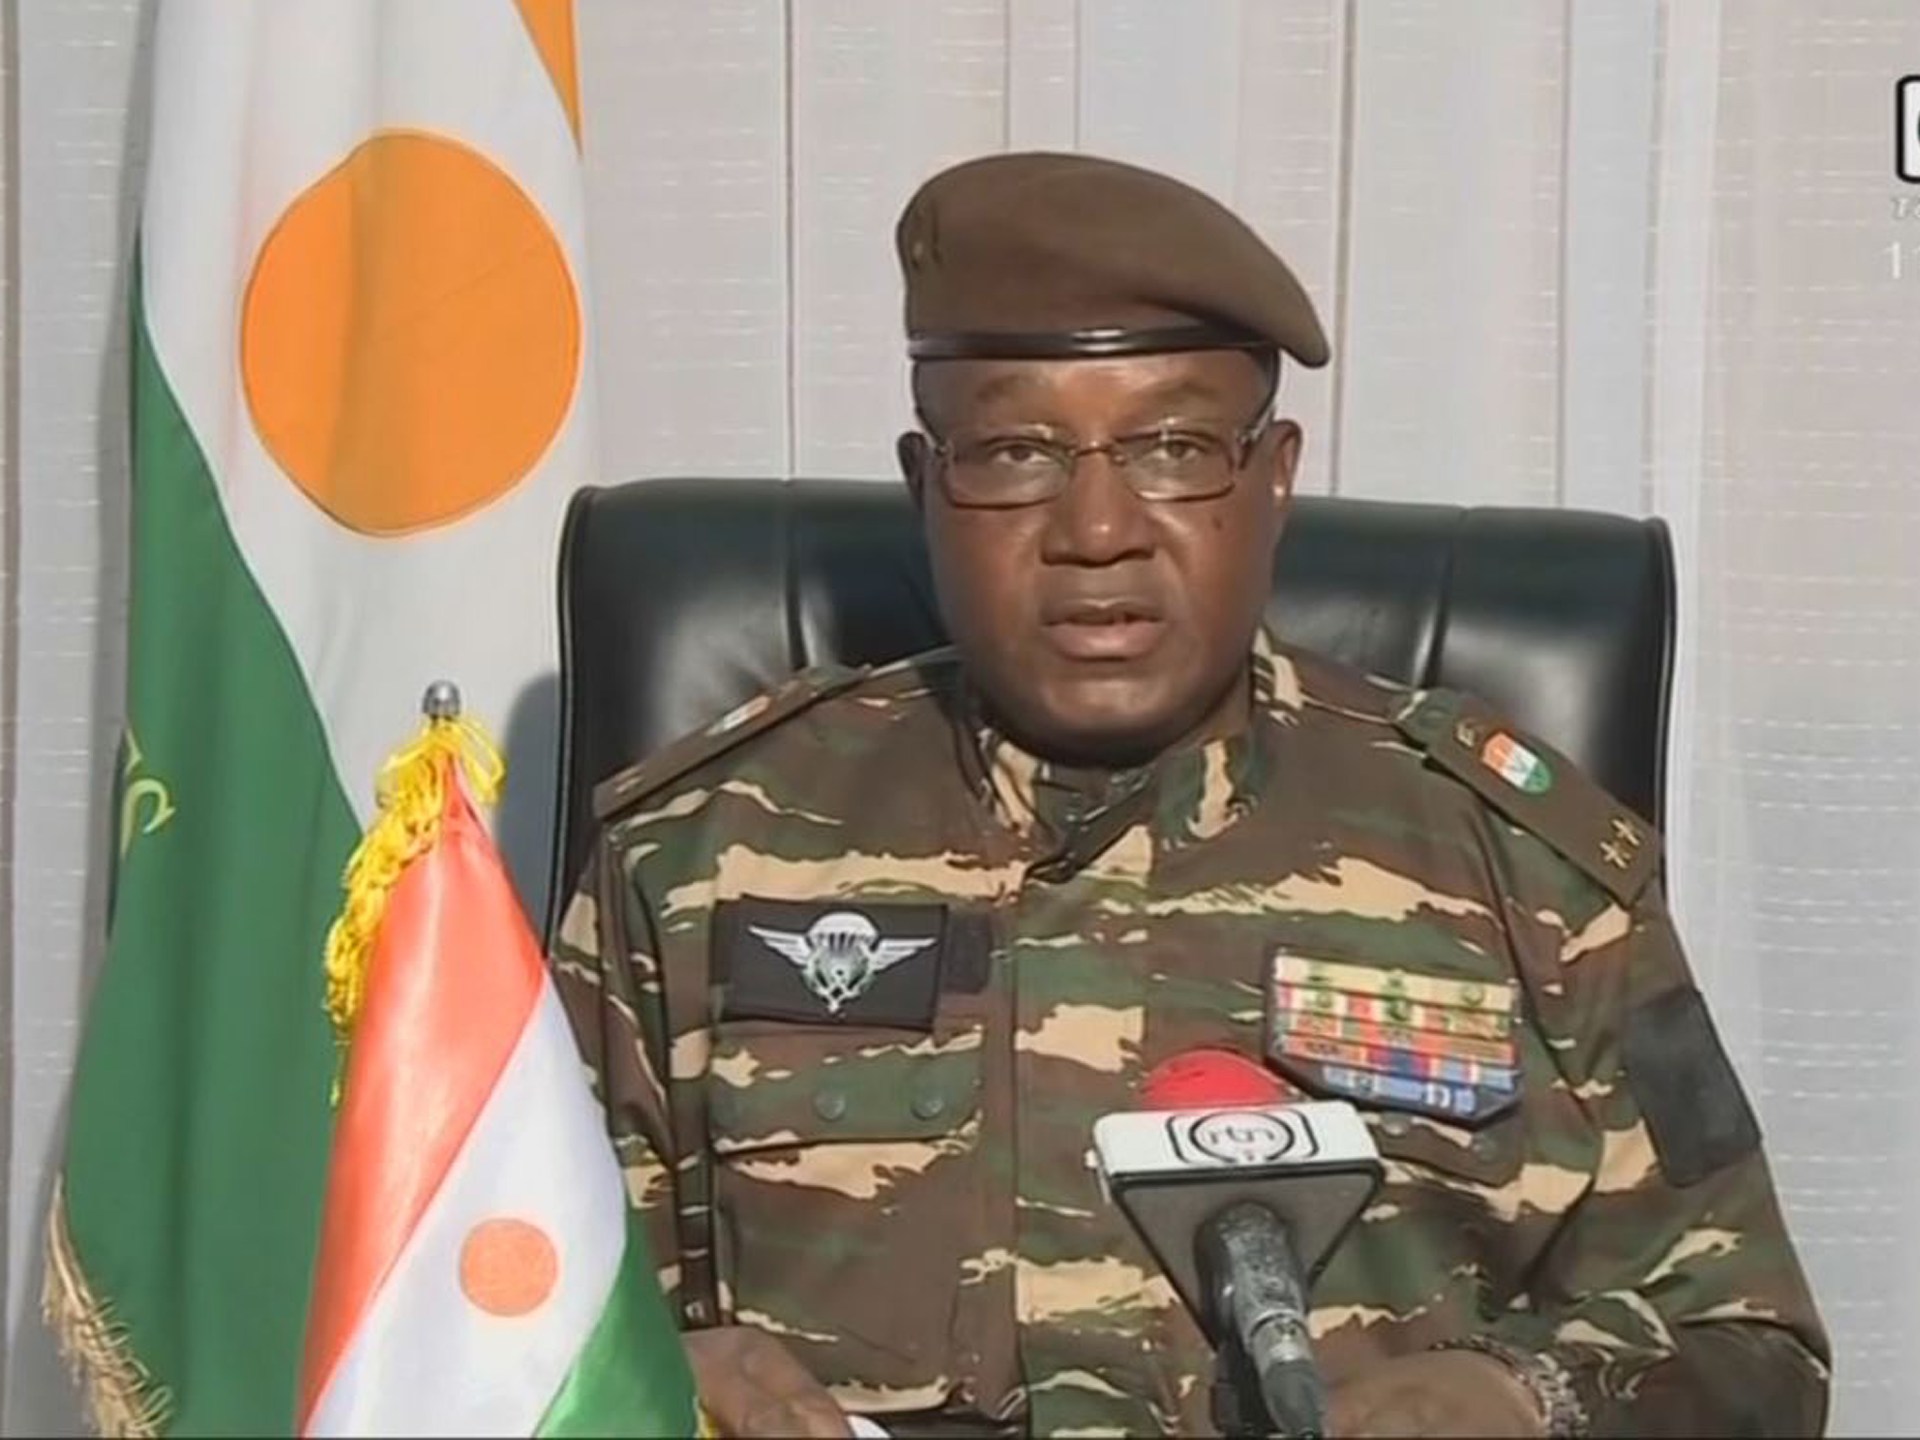 Jenderal Niger Tchiani Diangkat Sebagai Kepala Pemerintahan Transisi Setelah Kudeta |  Berita